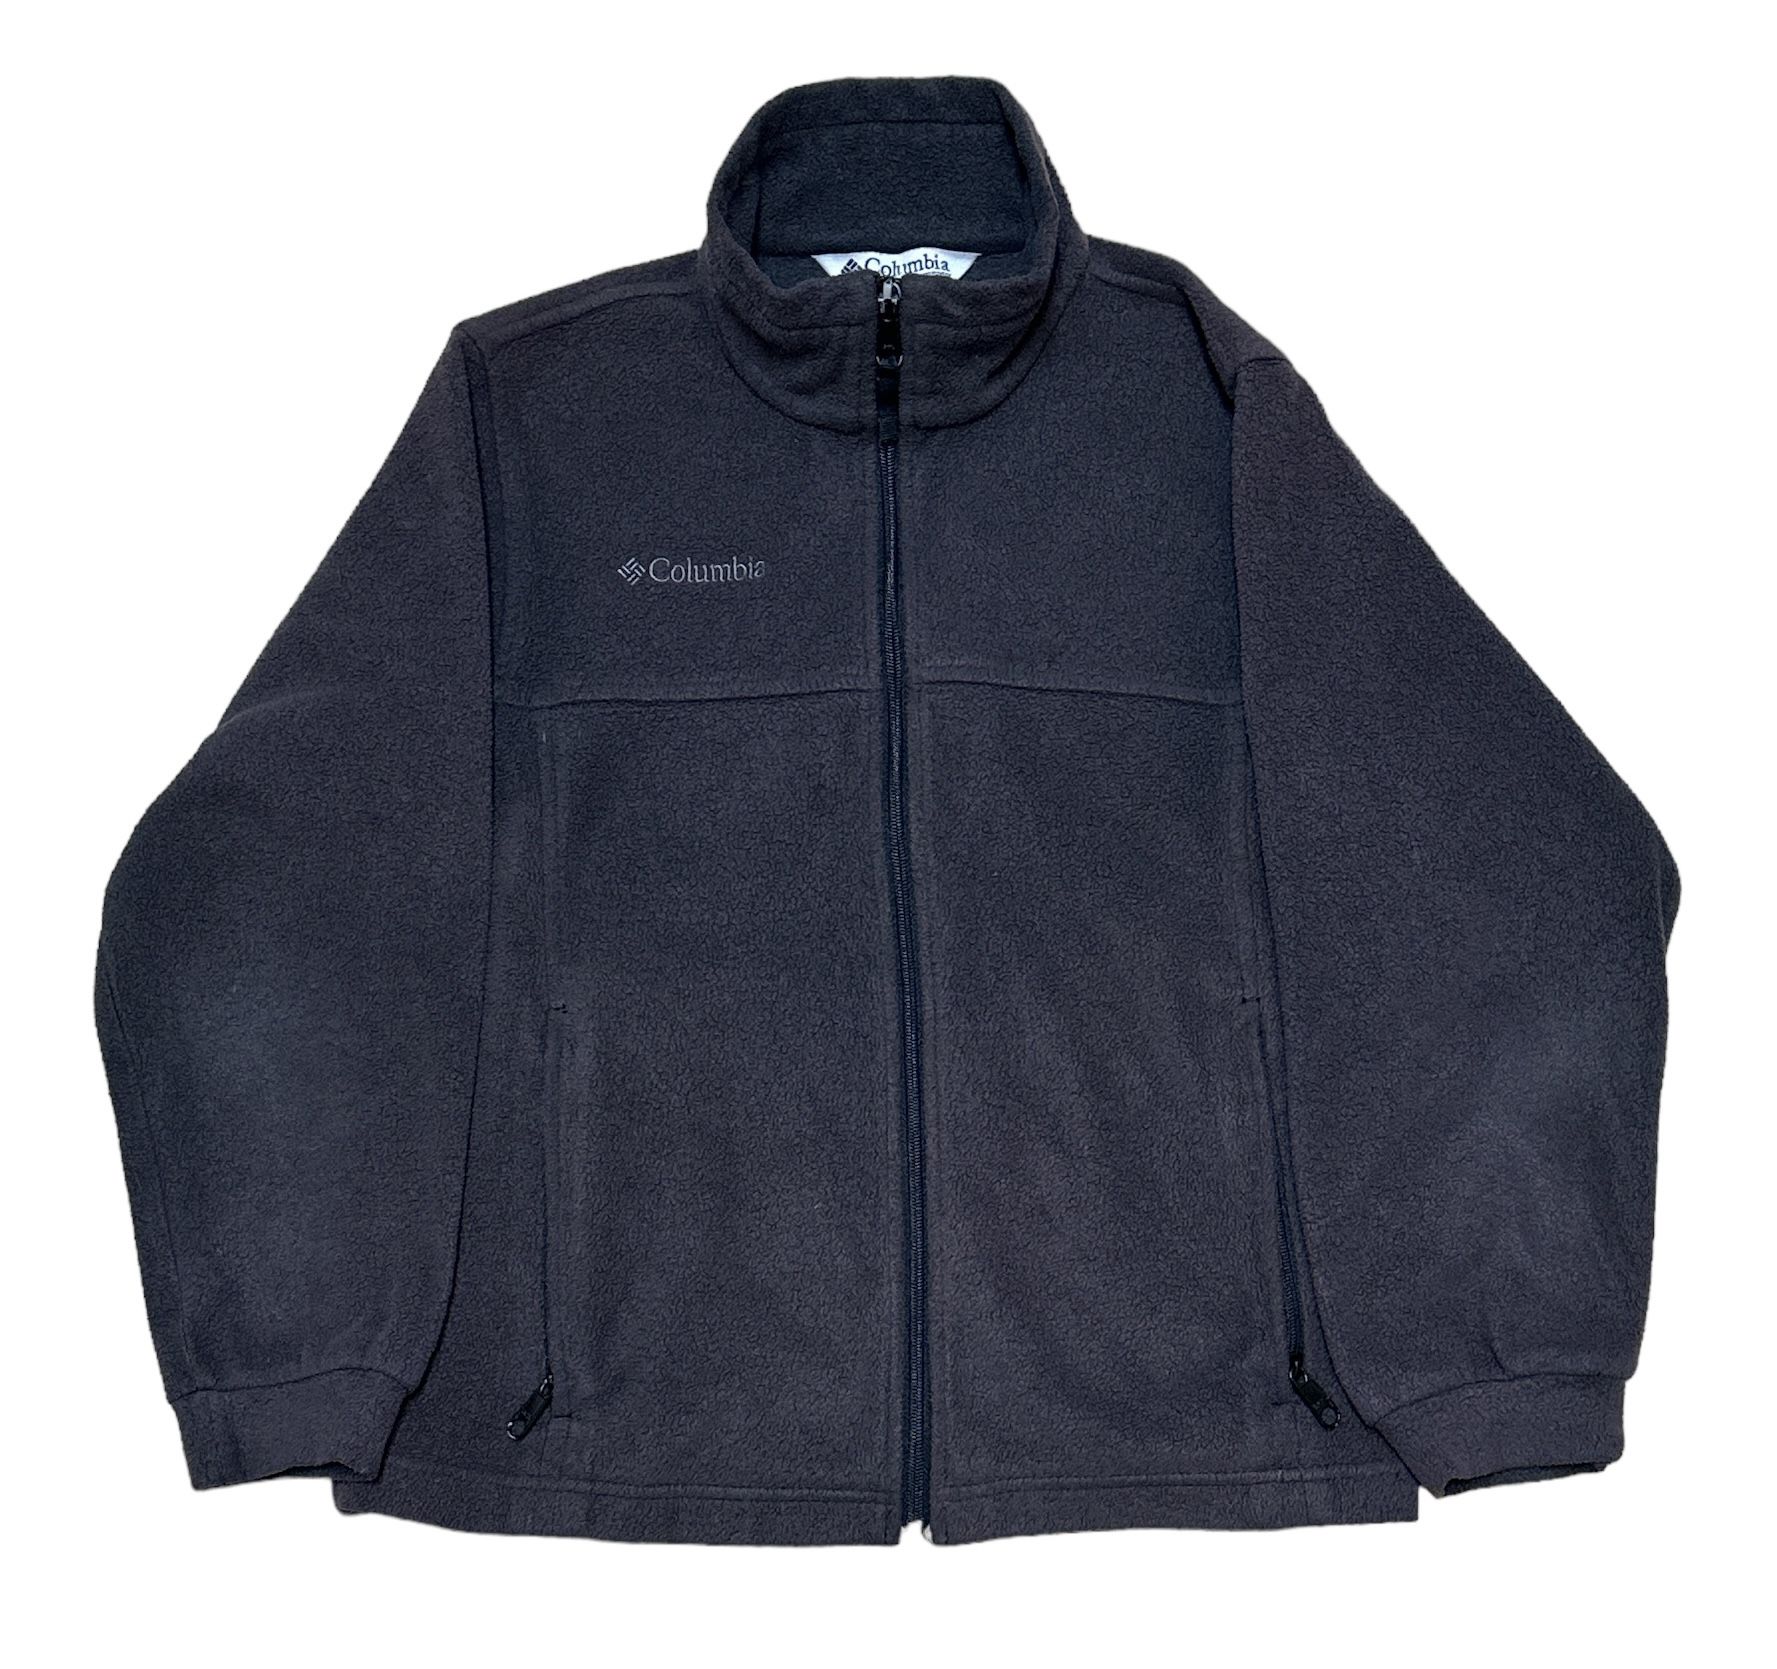 Columbia Boy’s Black Full Zip Fleece Jacket Size 10/12 Youth